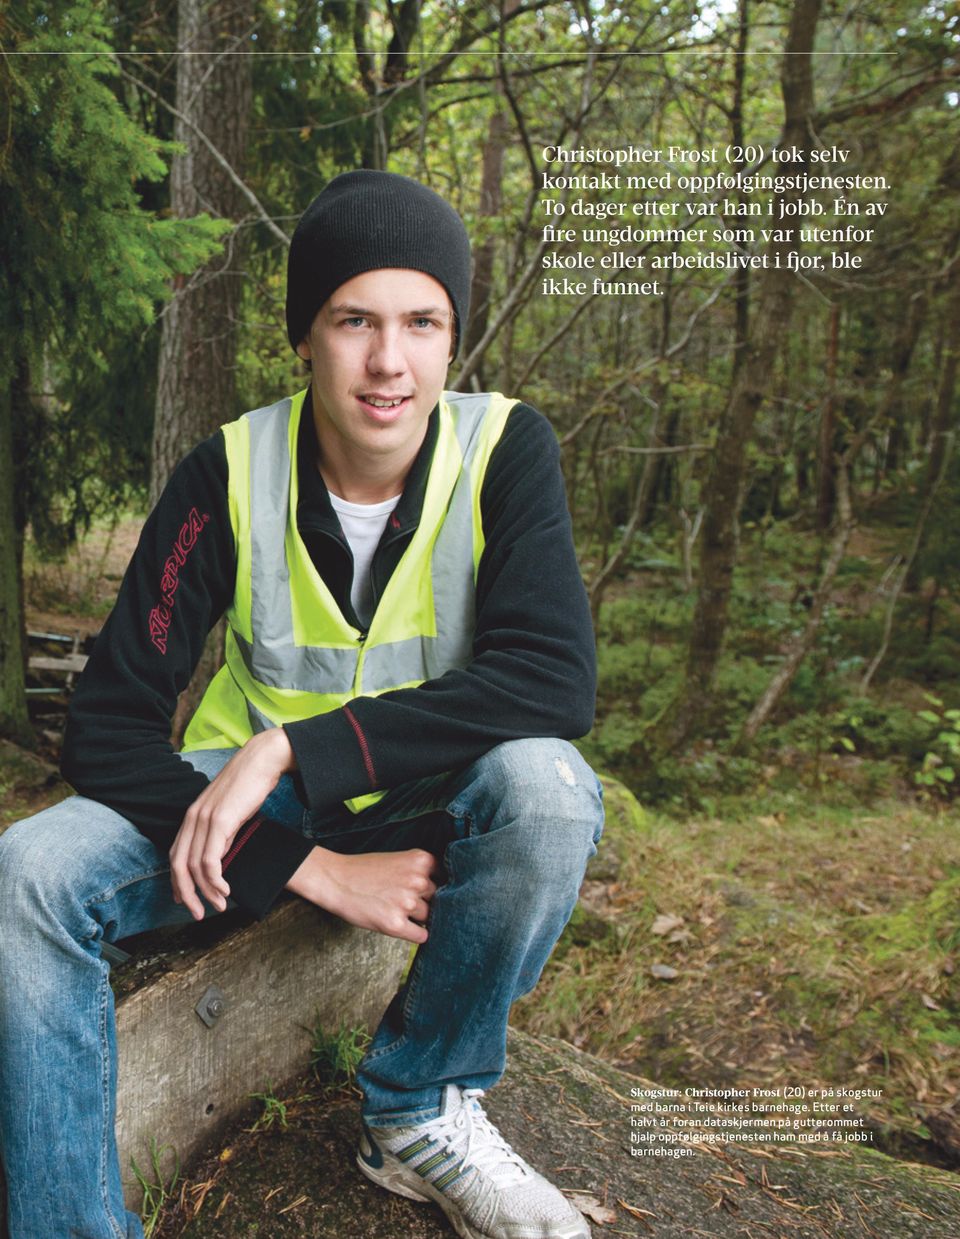 Skogstur: Christopher Frost (20) er på skogstur med barna i Teie kirkes barnehage.